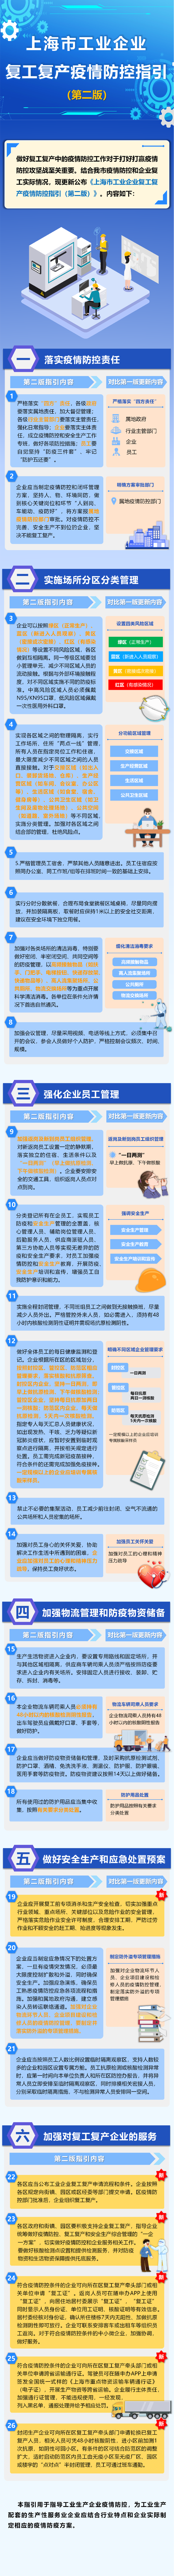 上海市工业企业复工复产疫情防控指引（第二版）发布